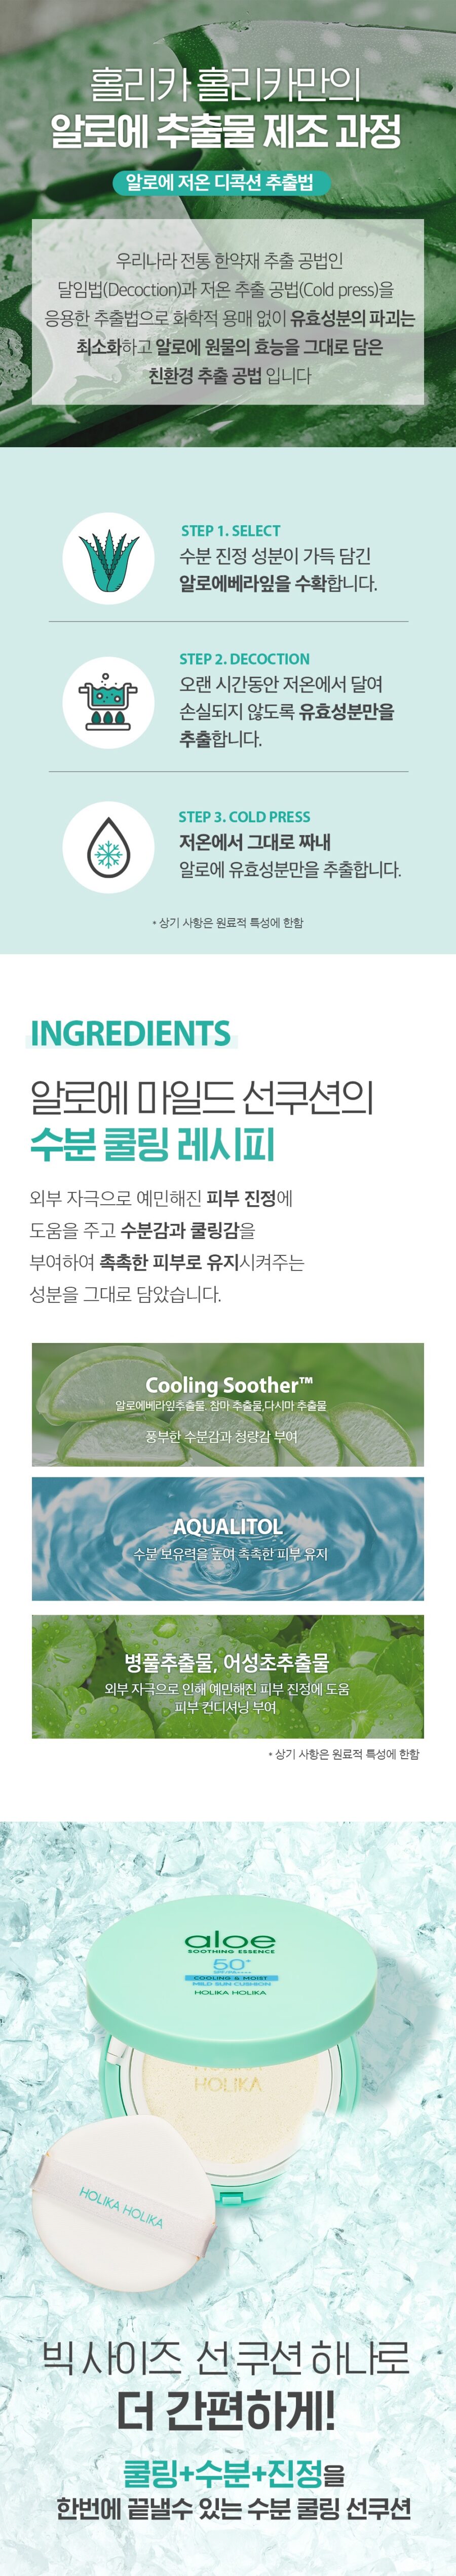 Holika Holika Aloe Soothing Essence Mild Sun Cushion korean skincare product online shop malaysia china india3